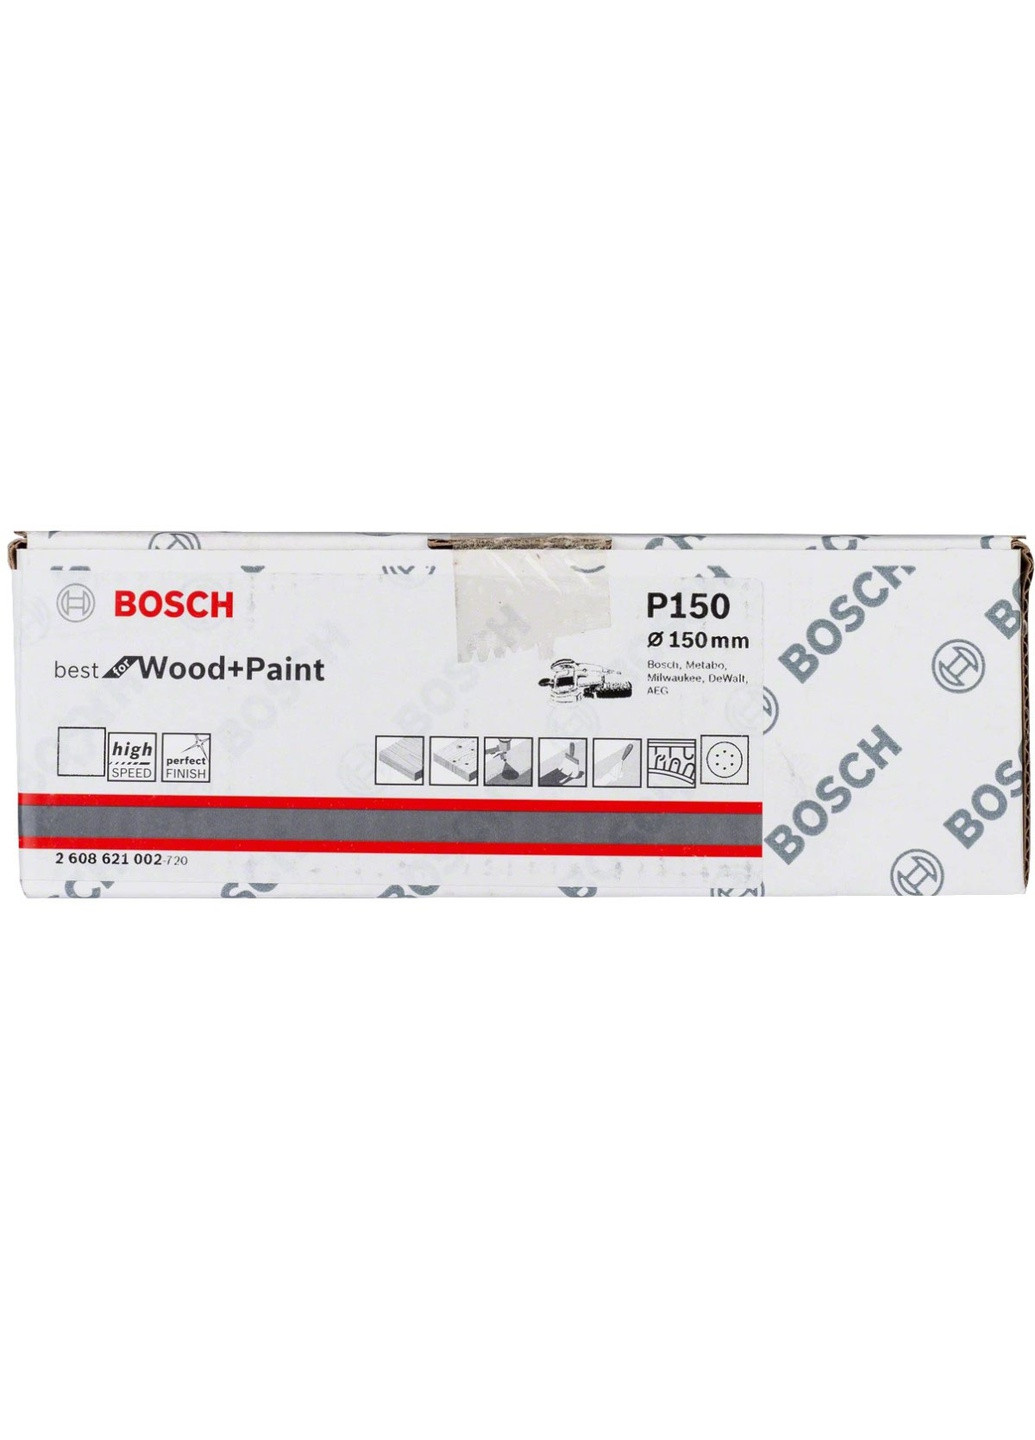 Шлифлист 2608621002 (150 мм, P150, 6 отверстий) шлифбумага шлифовальный диск (22197) Bosch (266816311)